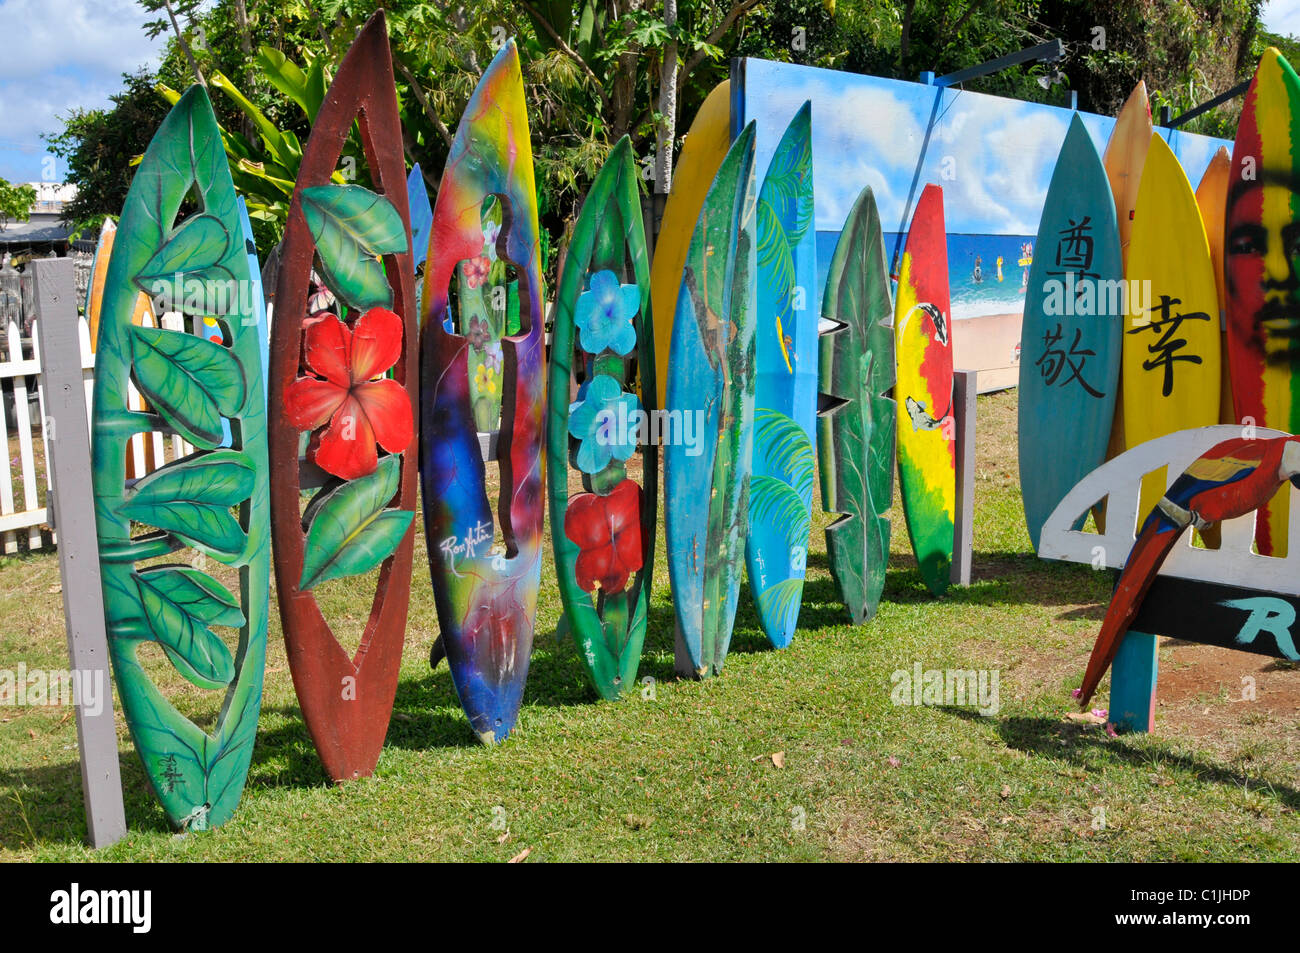 Surfbrett Kunst Galerie Haleiwa North Shore Hawaii Oahu Pazifischen Ozean Stockfoto